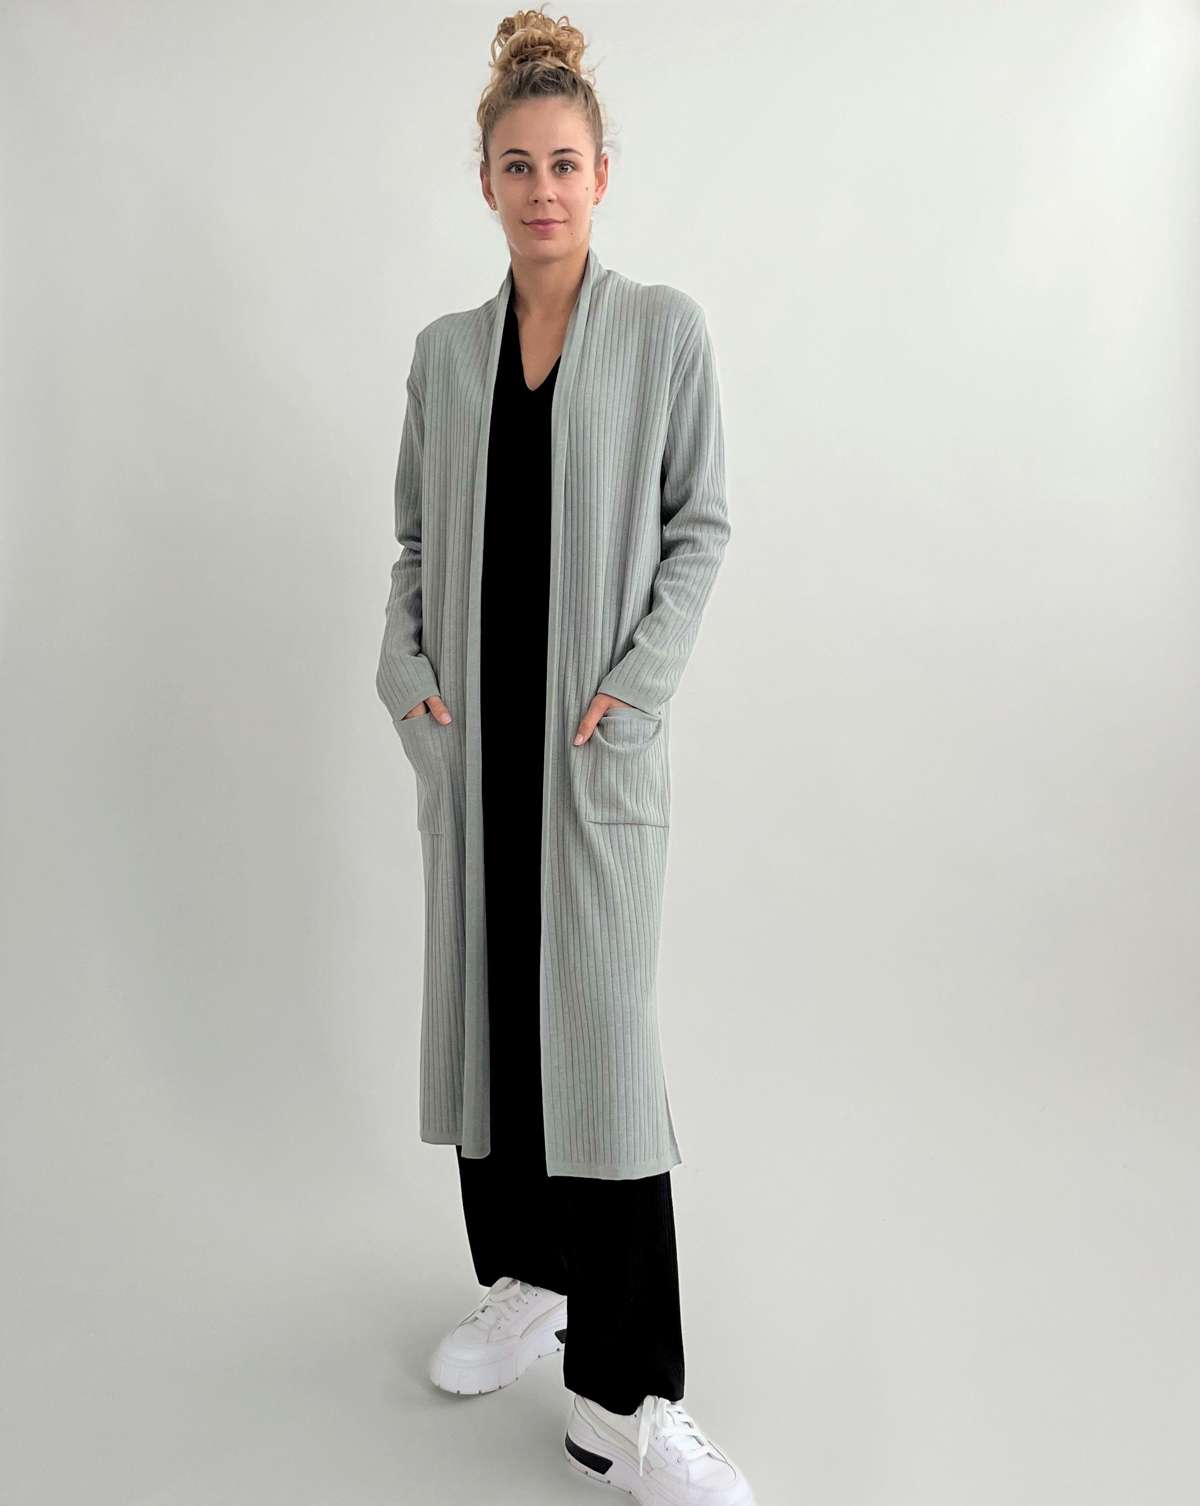 Вязаное пальто длинное пальто или длинный кардиган из вискозы в рубчик с эластаном.